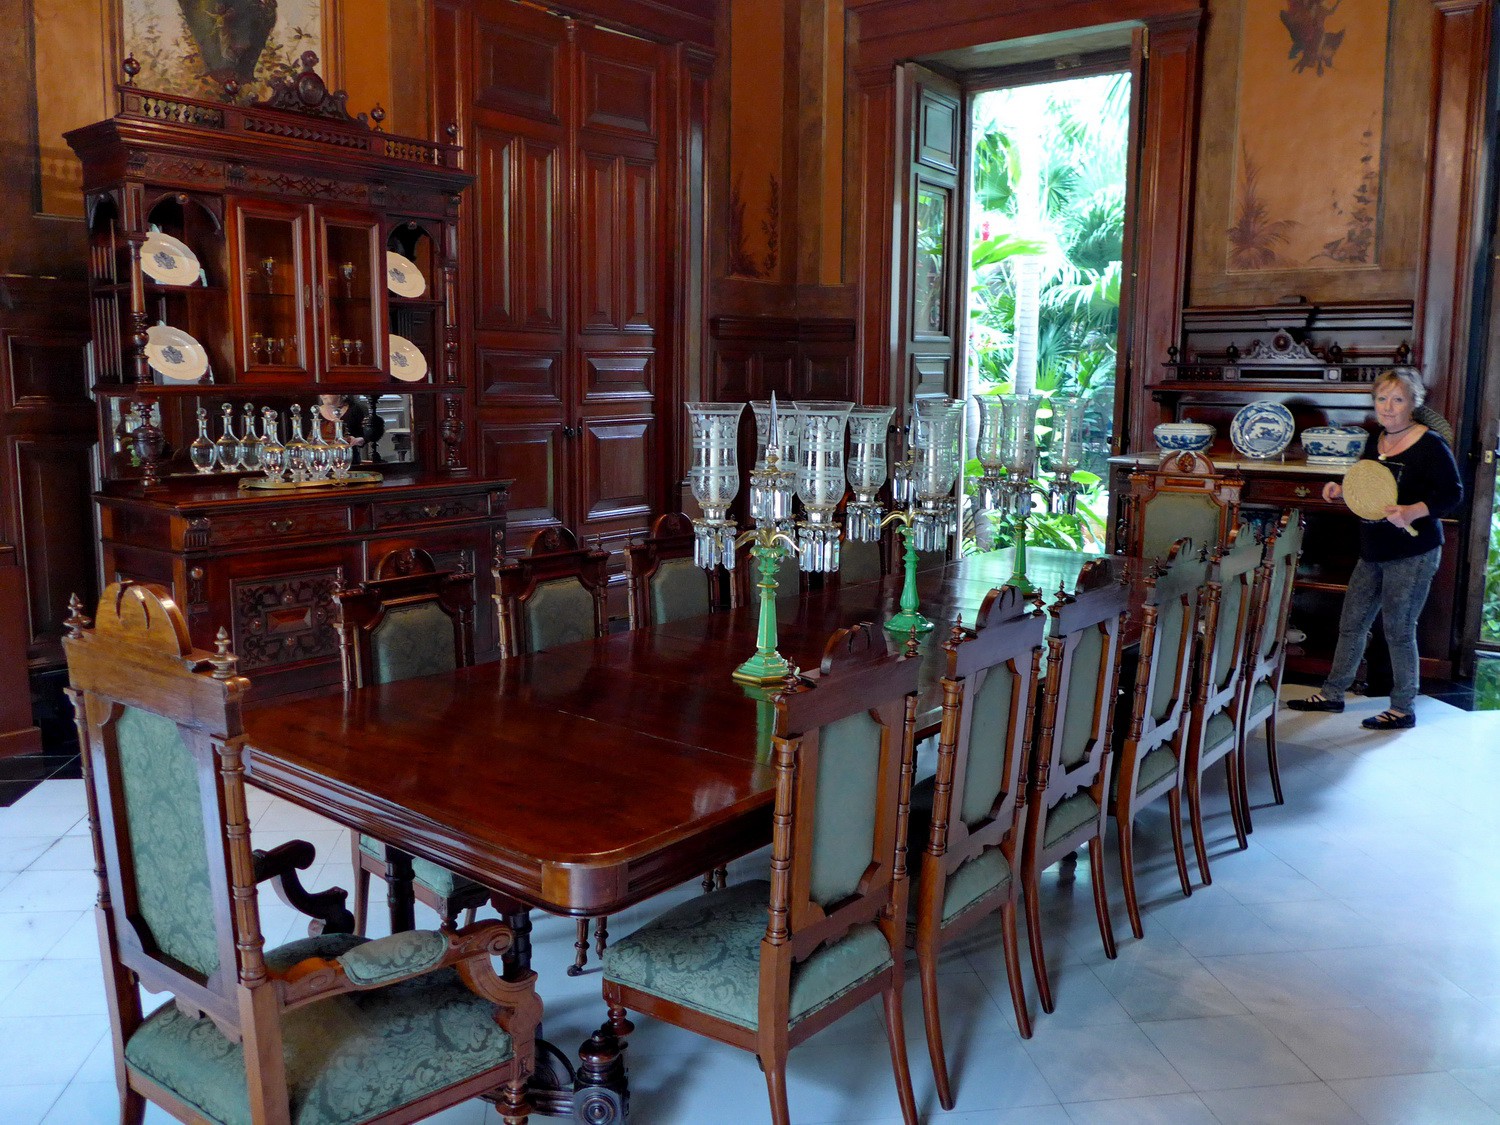 Dining room of the Palacio de Montejo